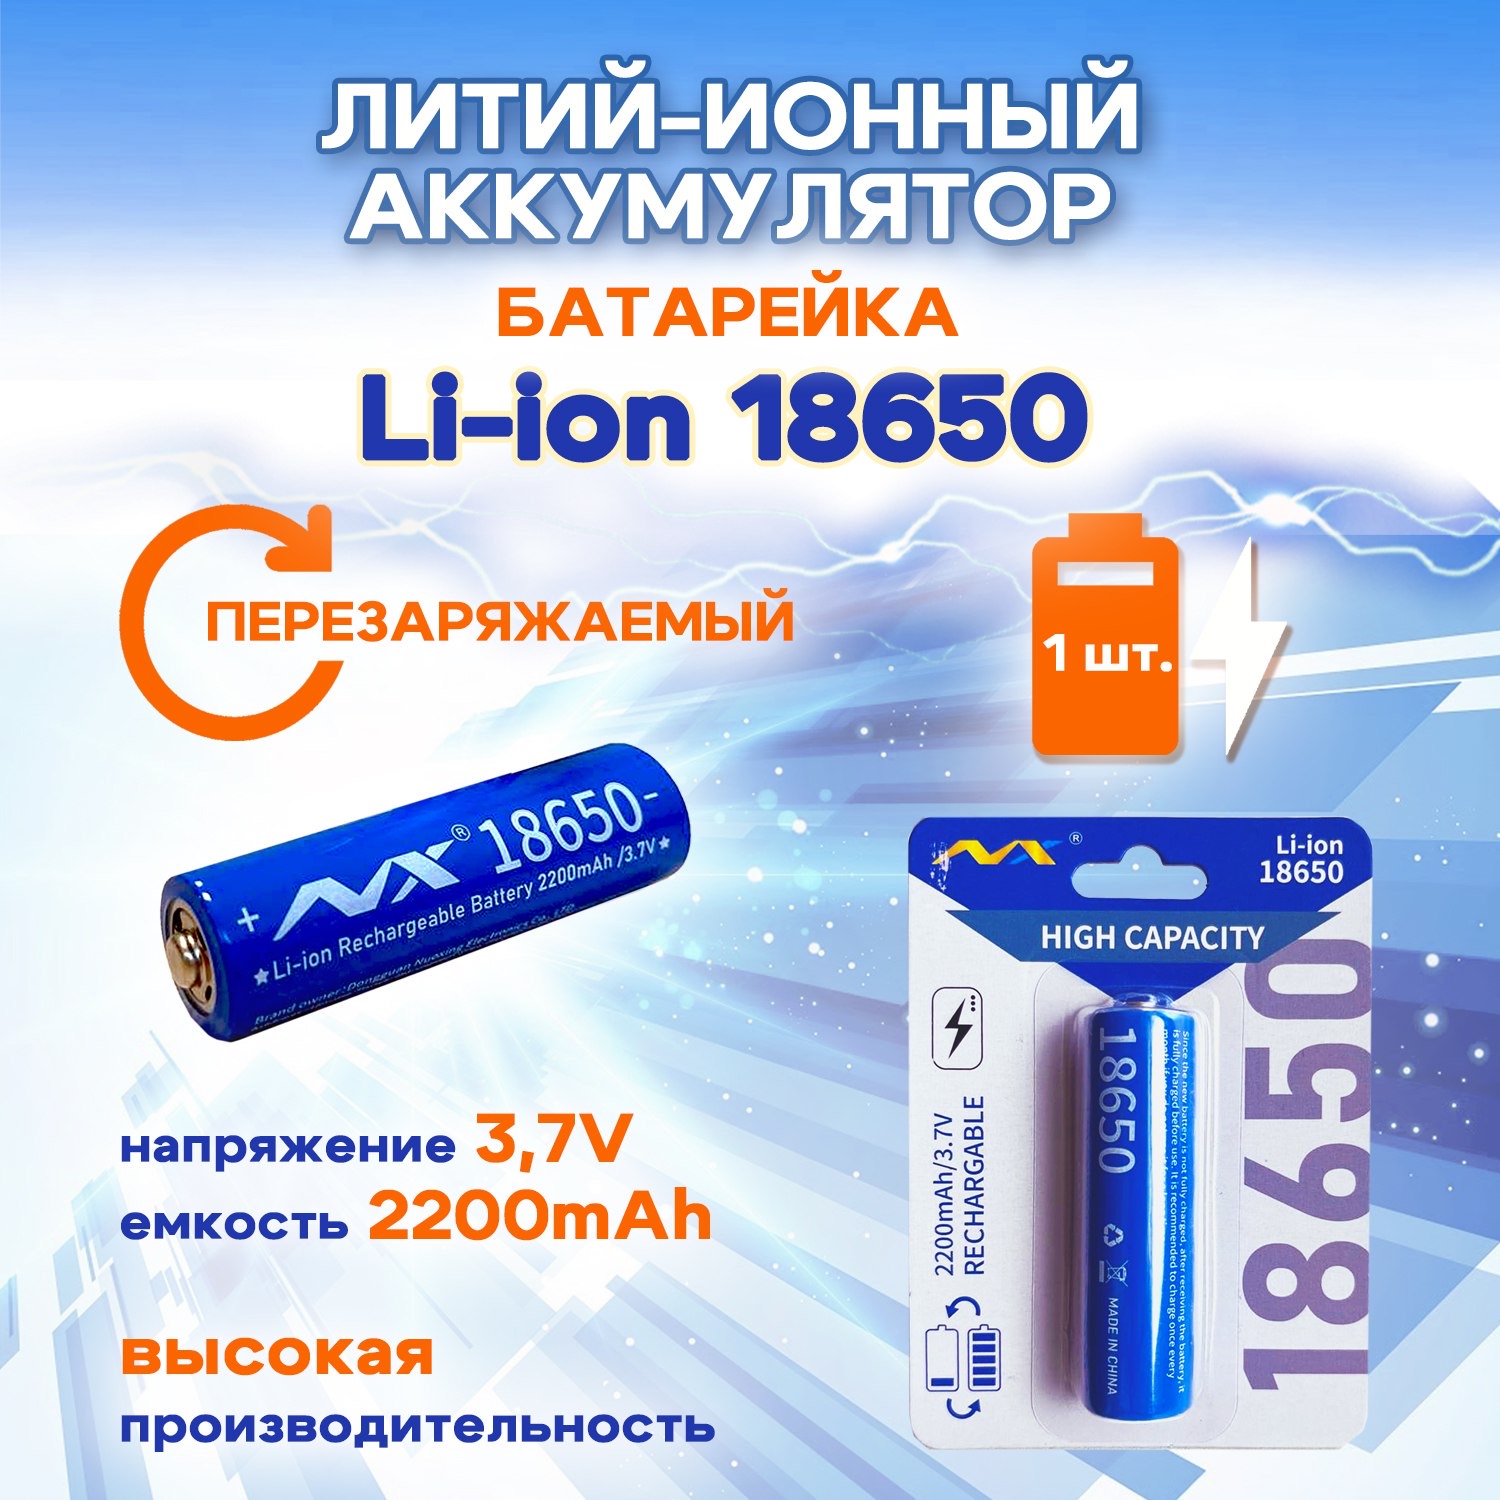 Батарейка-аккумулятор SUPER ENERGY 18650 3,7 В литий-ионный перезаряжаемый 2200 mAh, 1 шт портсигар на 10 сигарет 9 х 9 х 1 5 см